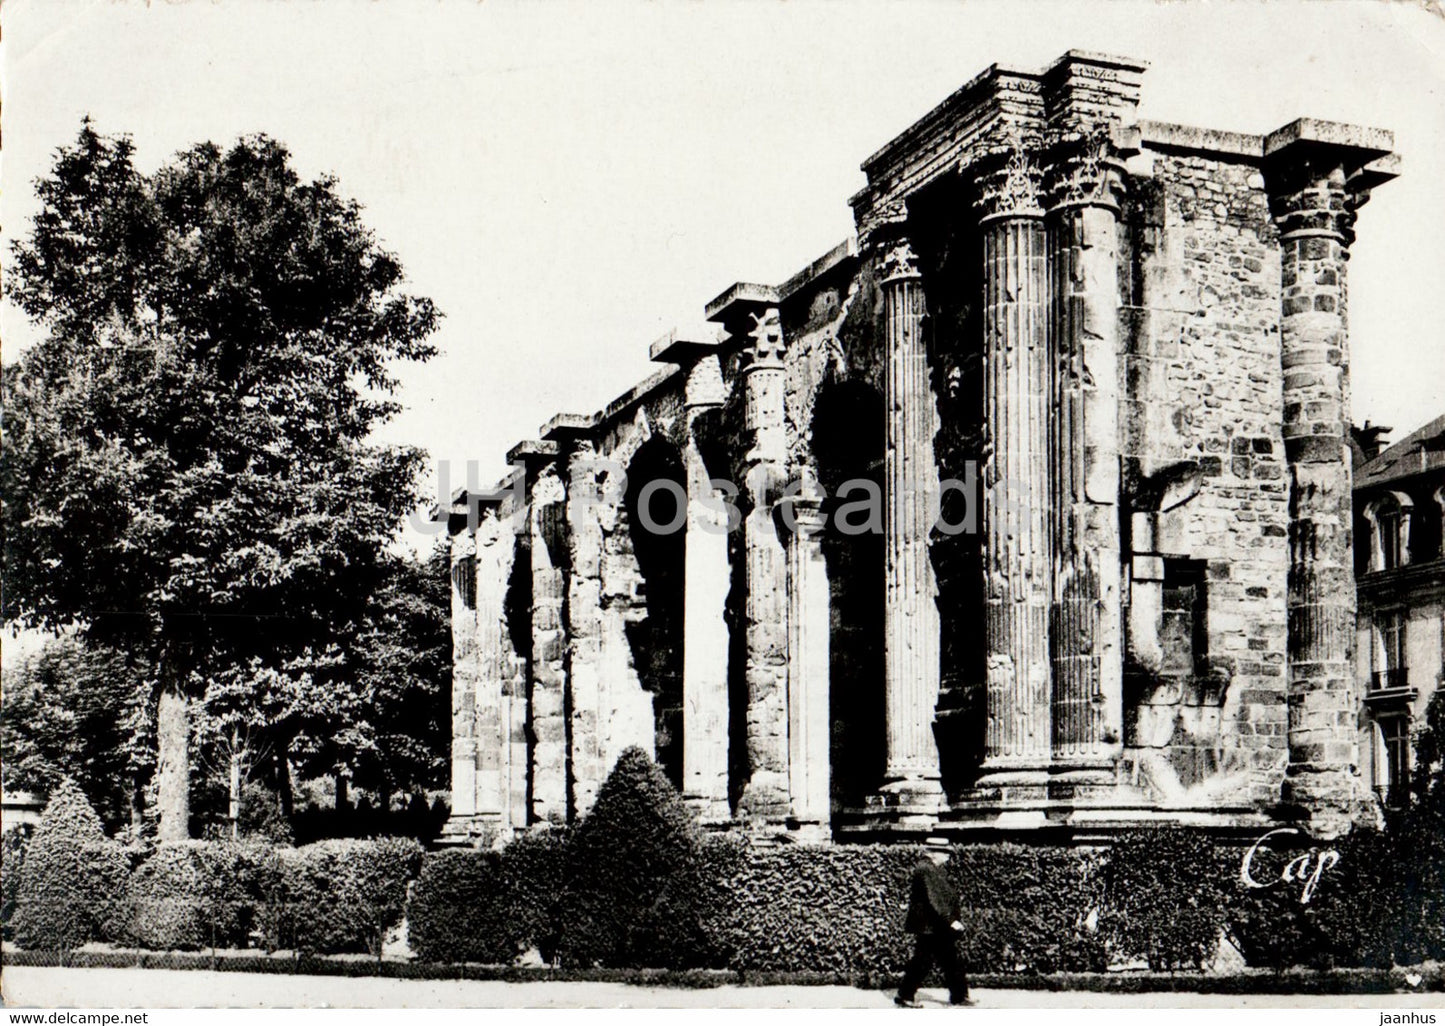 Reims - La Porte de Mars - ancient architecture -  old postcard - 1946 - France - used - JH Postcards